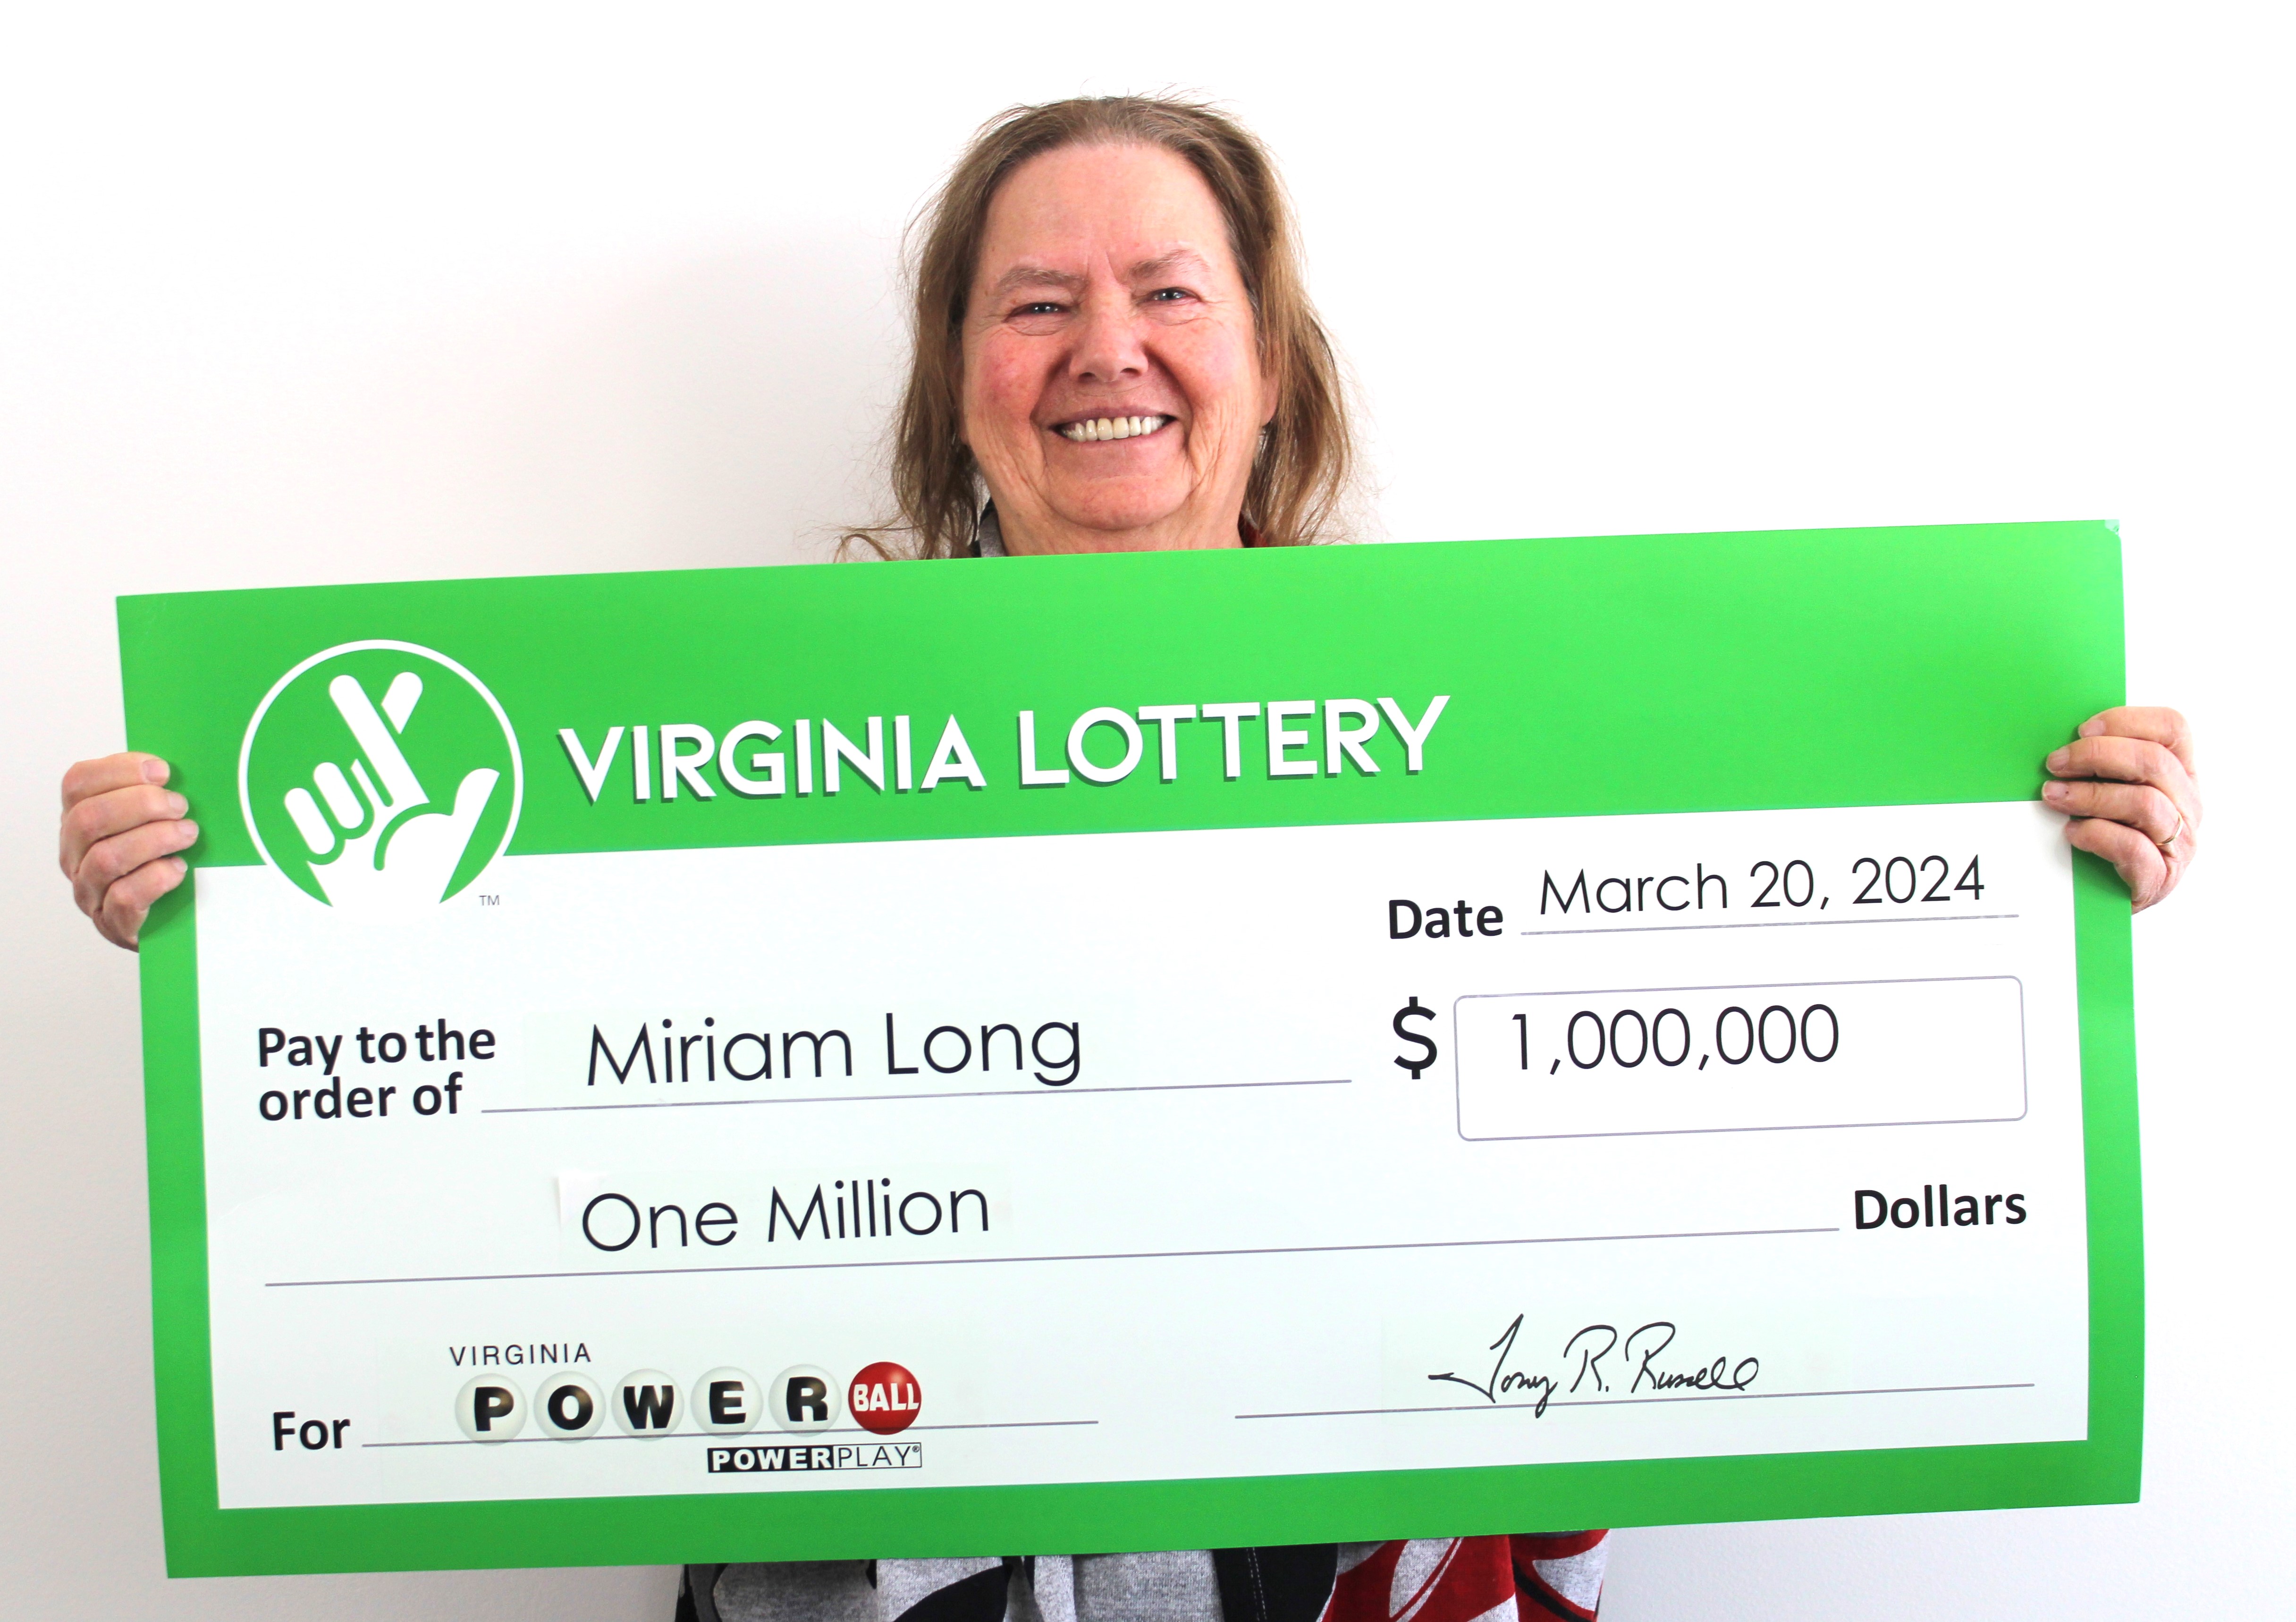 Vrouw drukt op verkeerde knop bij loterij en wint miljoen: ‘Mooiste fout van m’n leven’